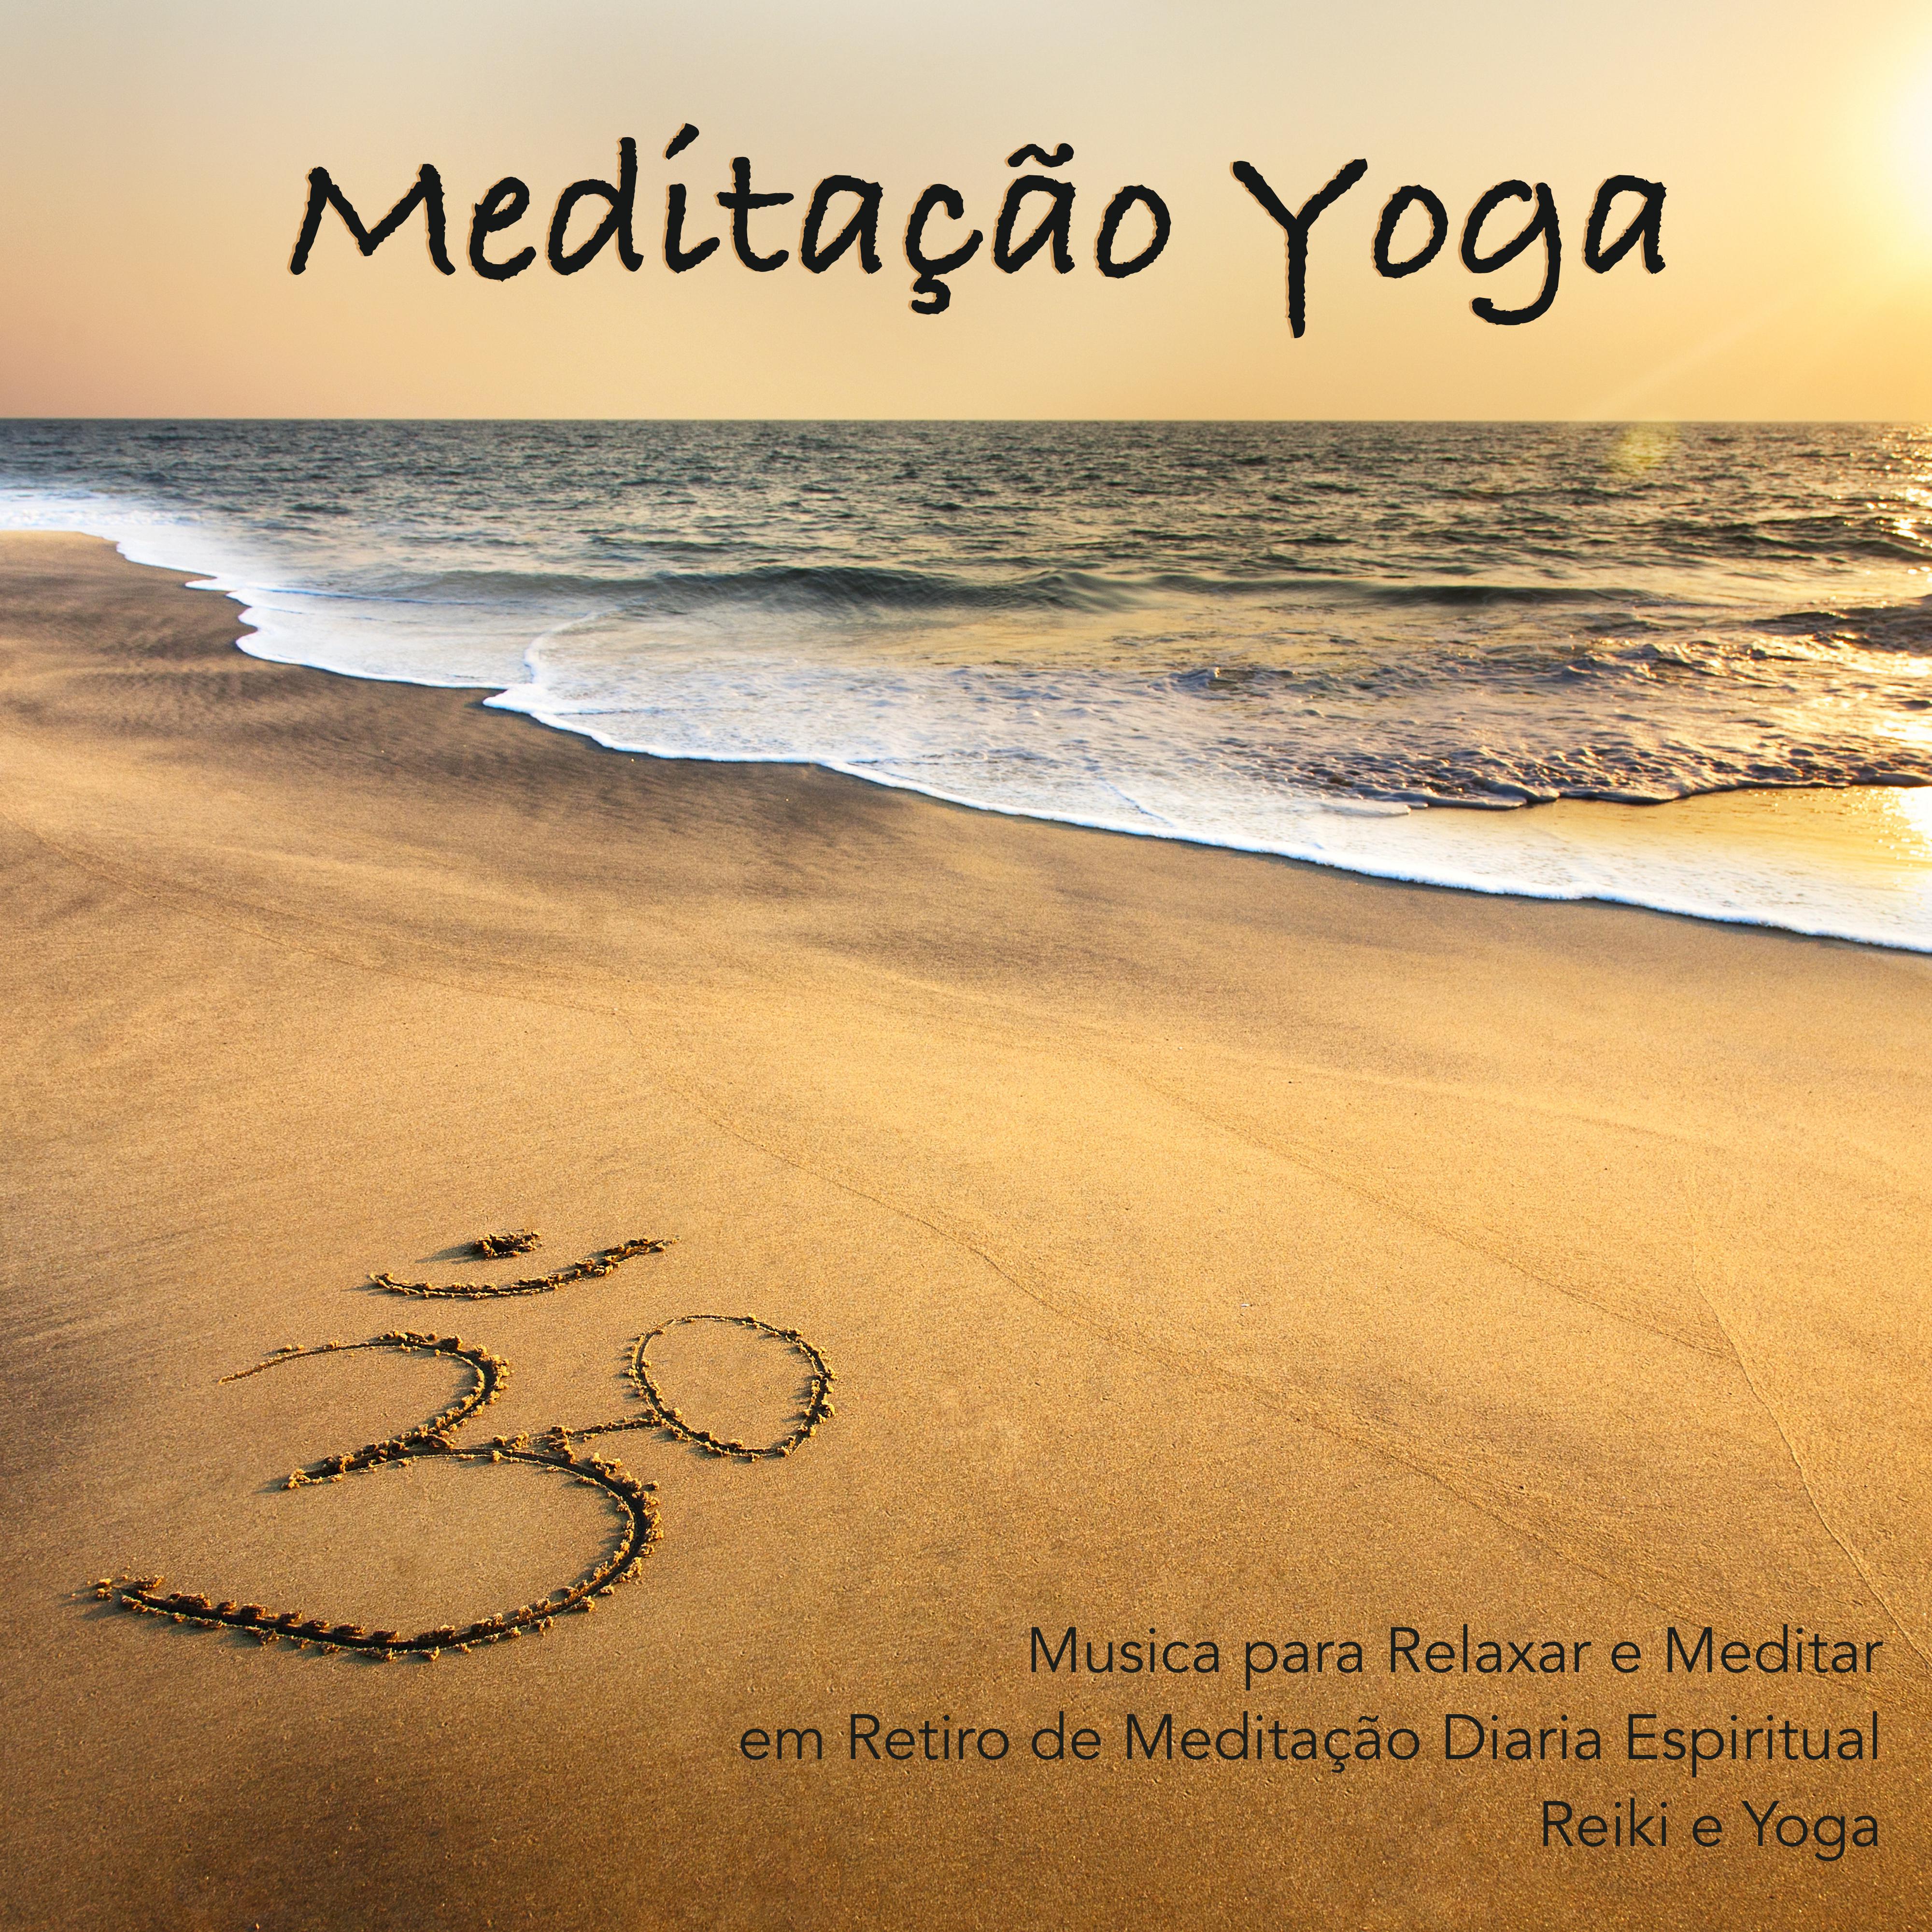 Medita o Yoga  Musica para Relaxar e Meditar em Retiro de Medita o Diaria Espiritual, Reiki e Yoga